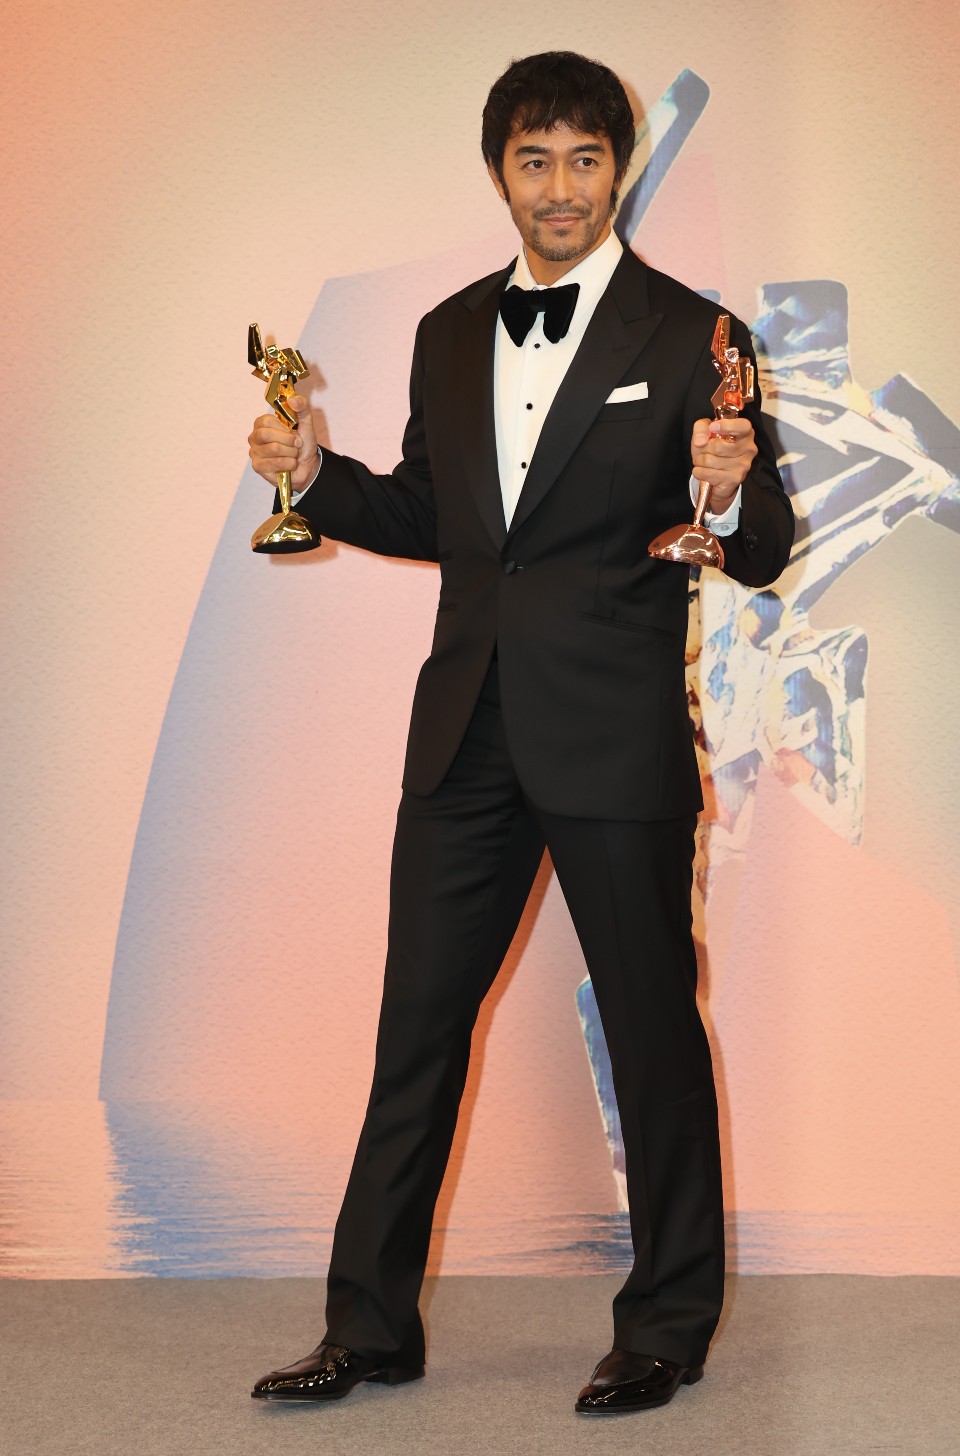 日本巨星阿部寬在獲頒「卓越亞洲電影人大獎」及「最佳衣著獎」。